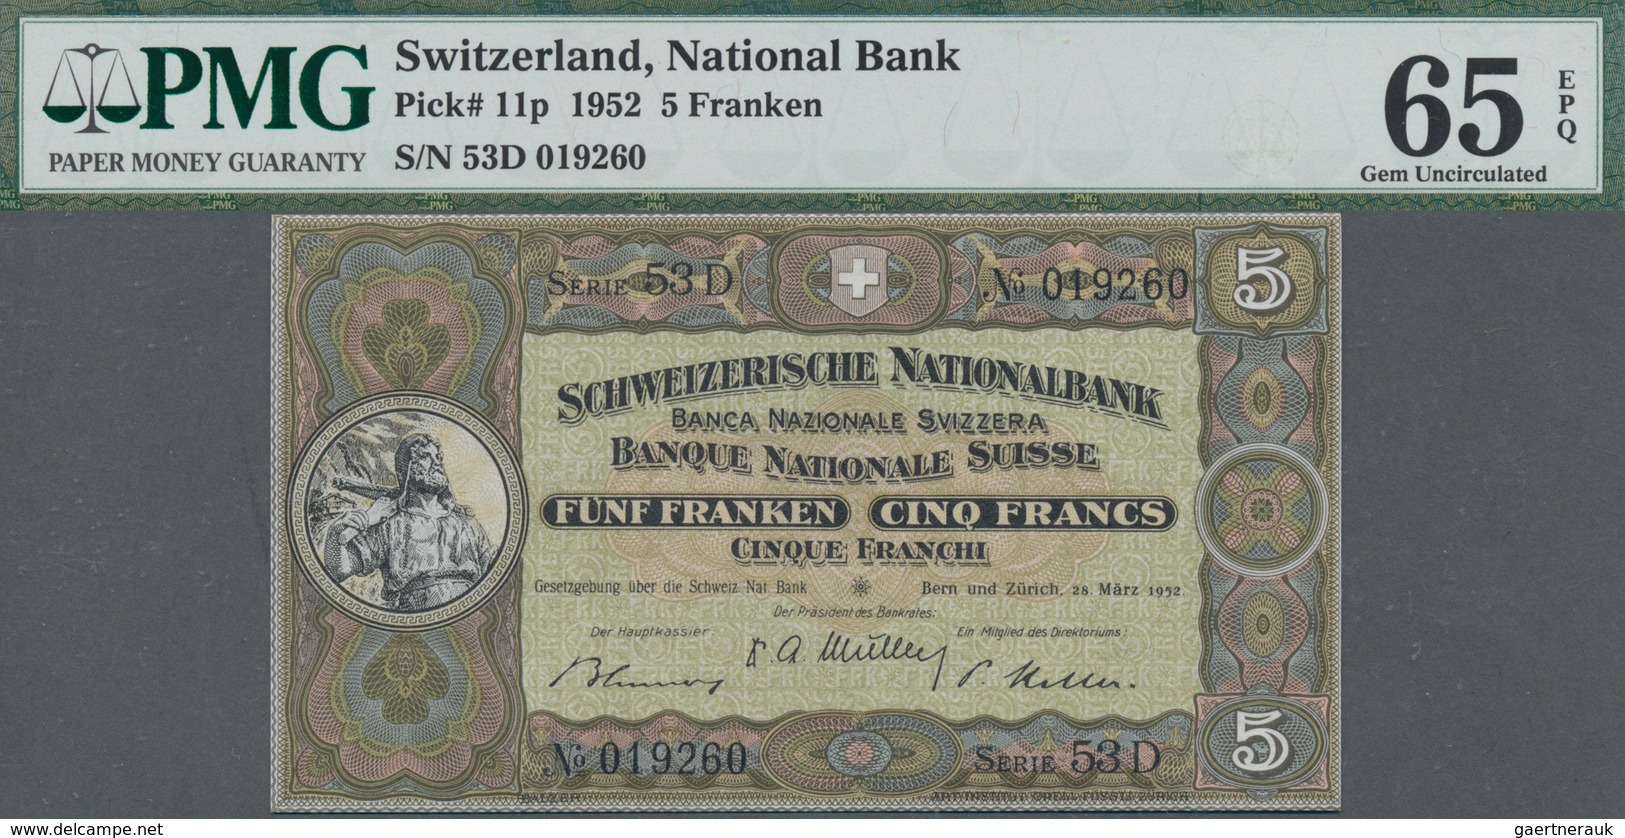 Switzerland / Schweiz: Schweizerische Nationalbank set with 4 banknotes 5 Franken 1952, P.11p, all P